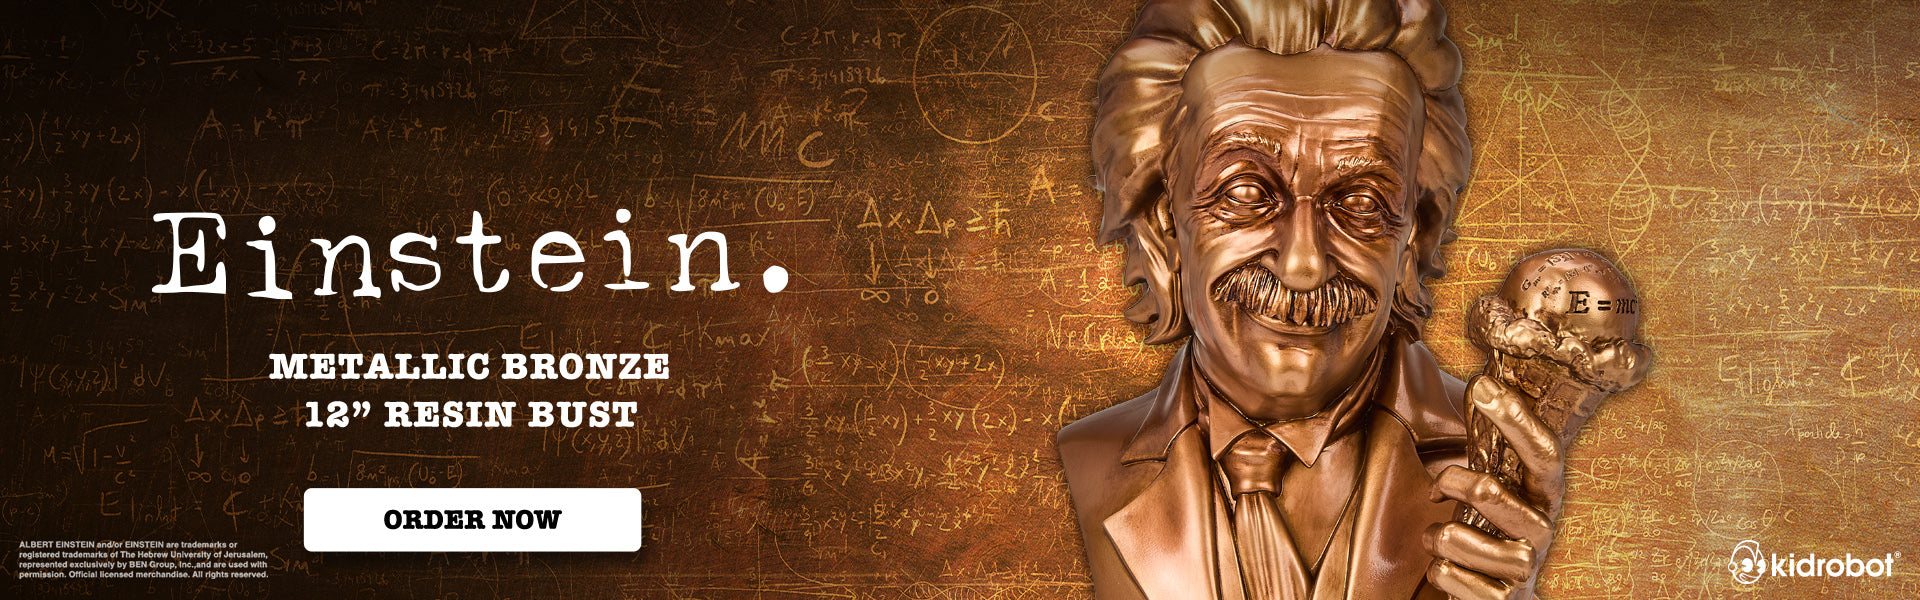 Metallic Bronze Albert Einstein Resin Bust